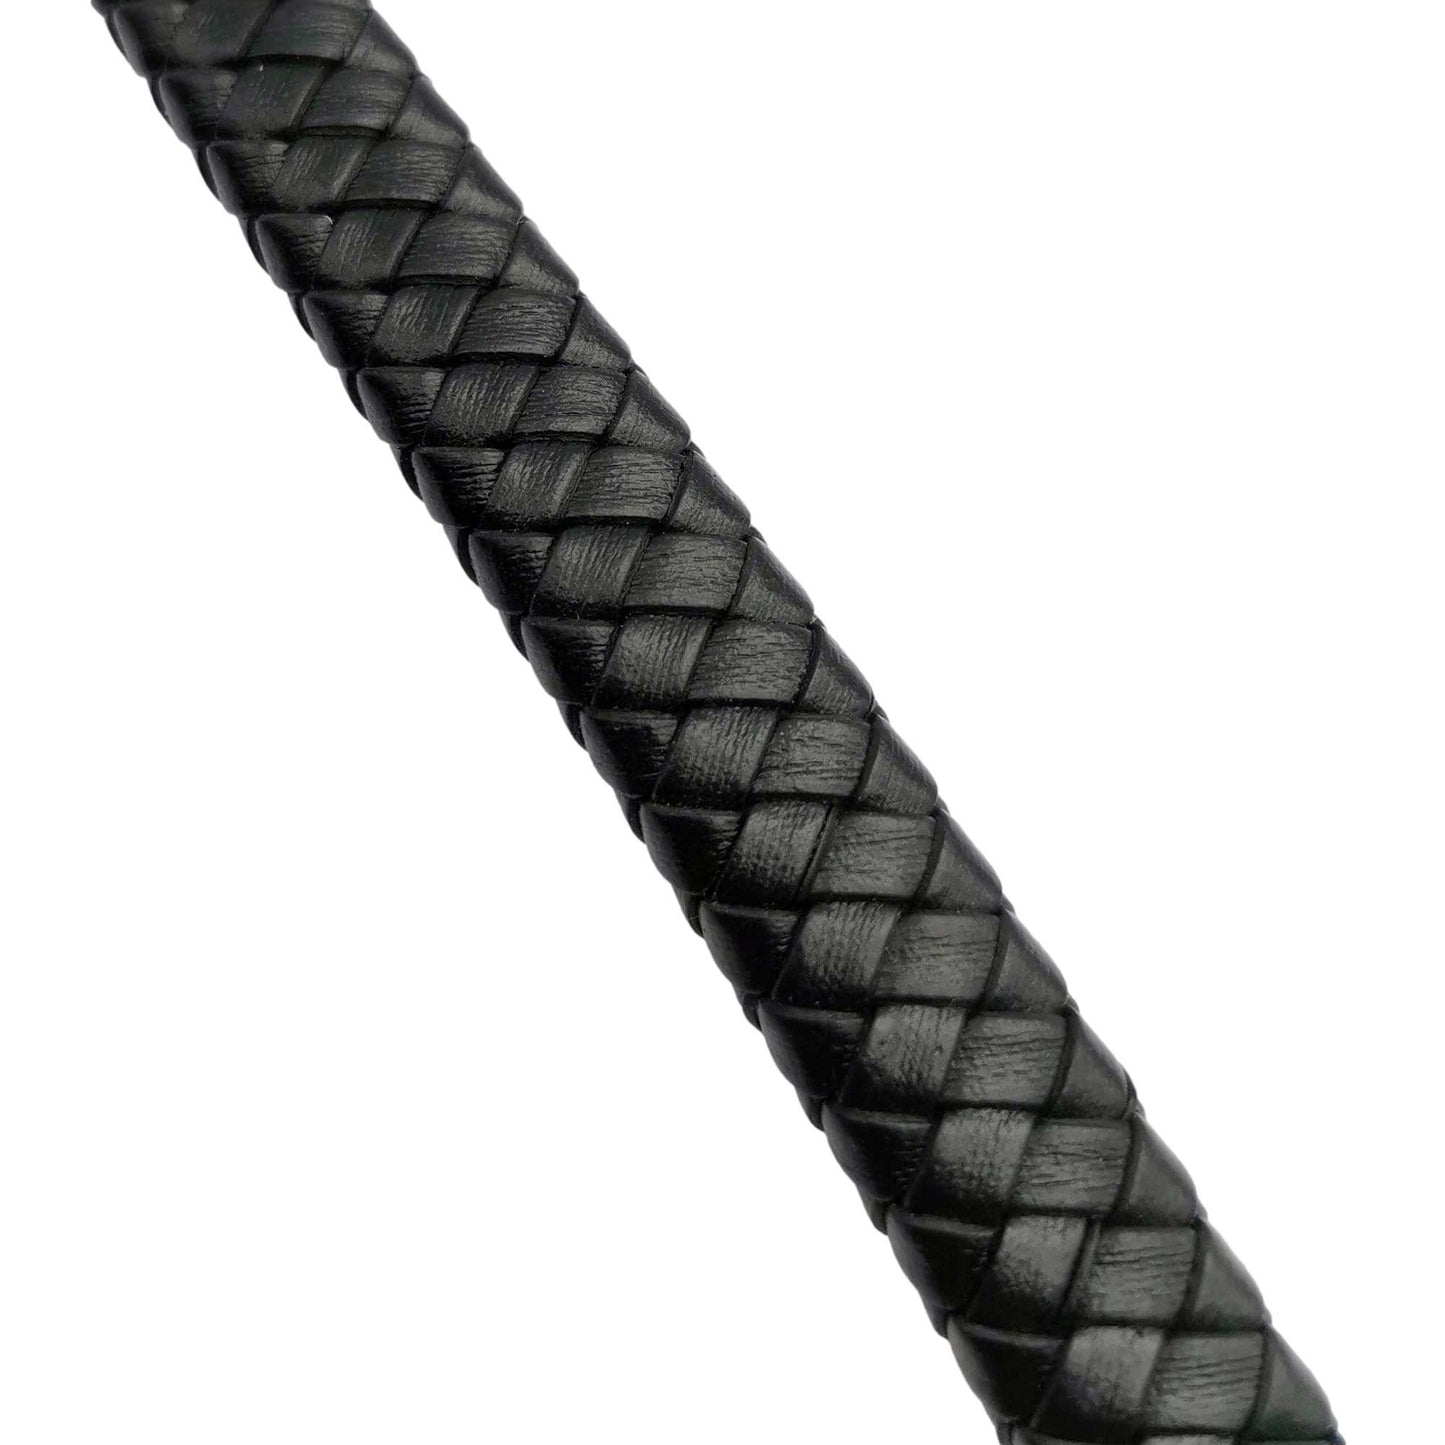 ShapesbyX-10mm flaches geflochtenes Lederband Distressed Brown 10x5mm Leder Bolo Strip Armbandherstellung Handwerk